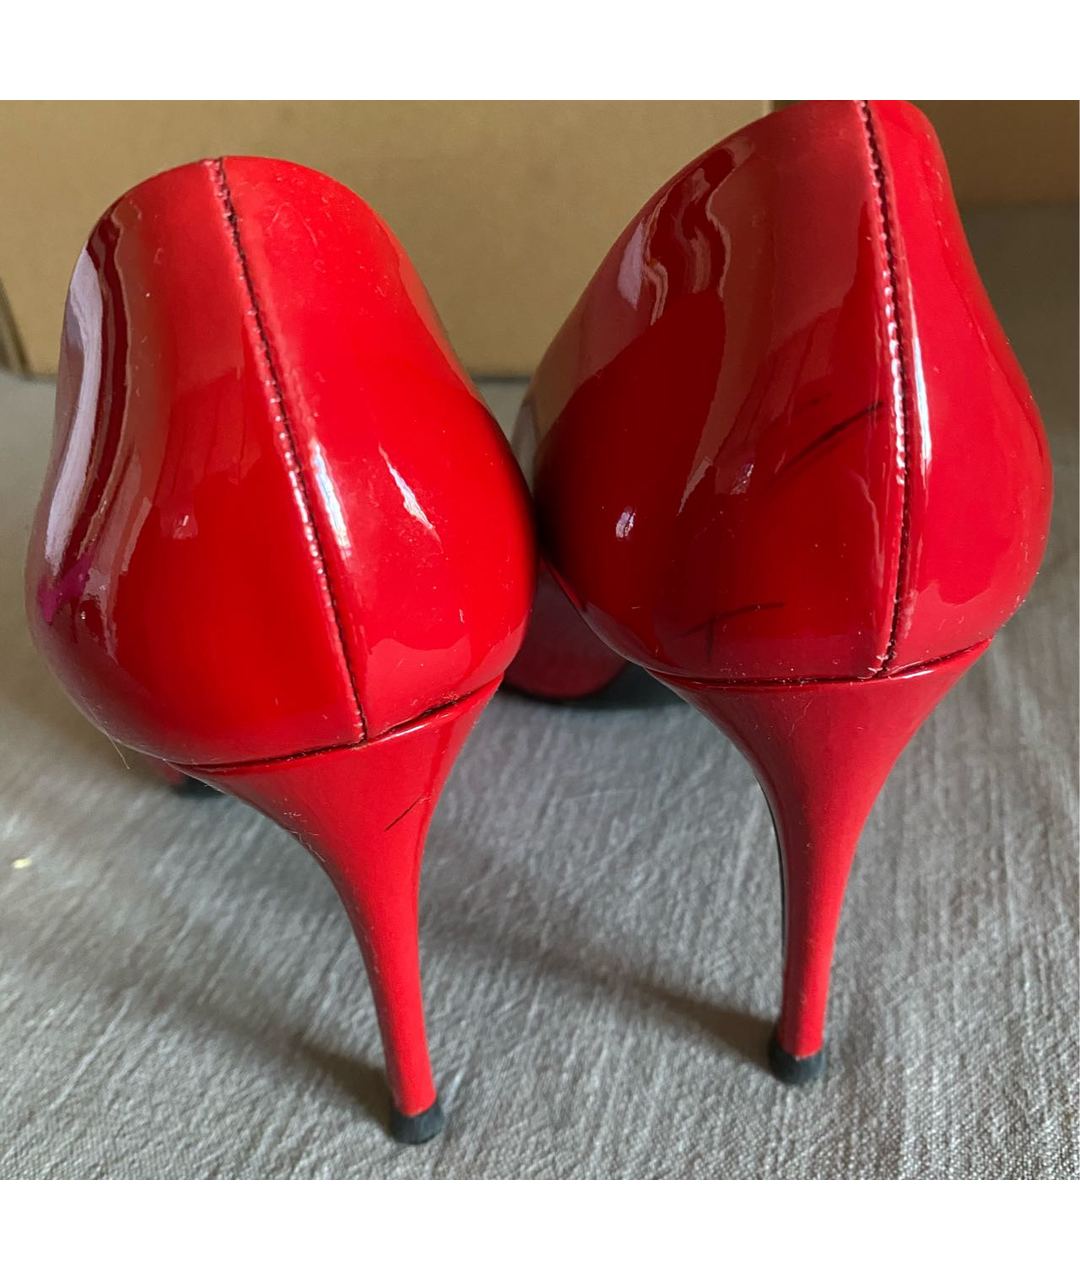 CASADEI Красные туфли из лакированной кожи, фото 5